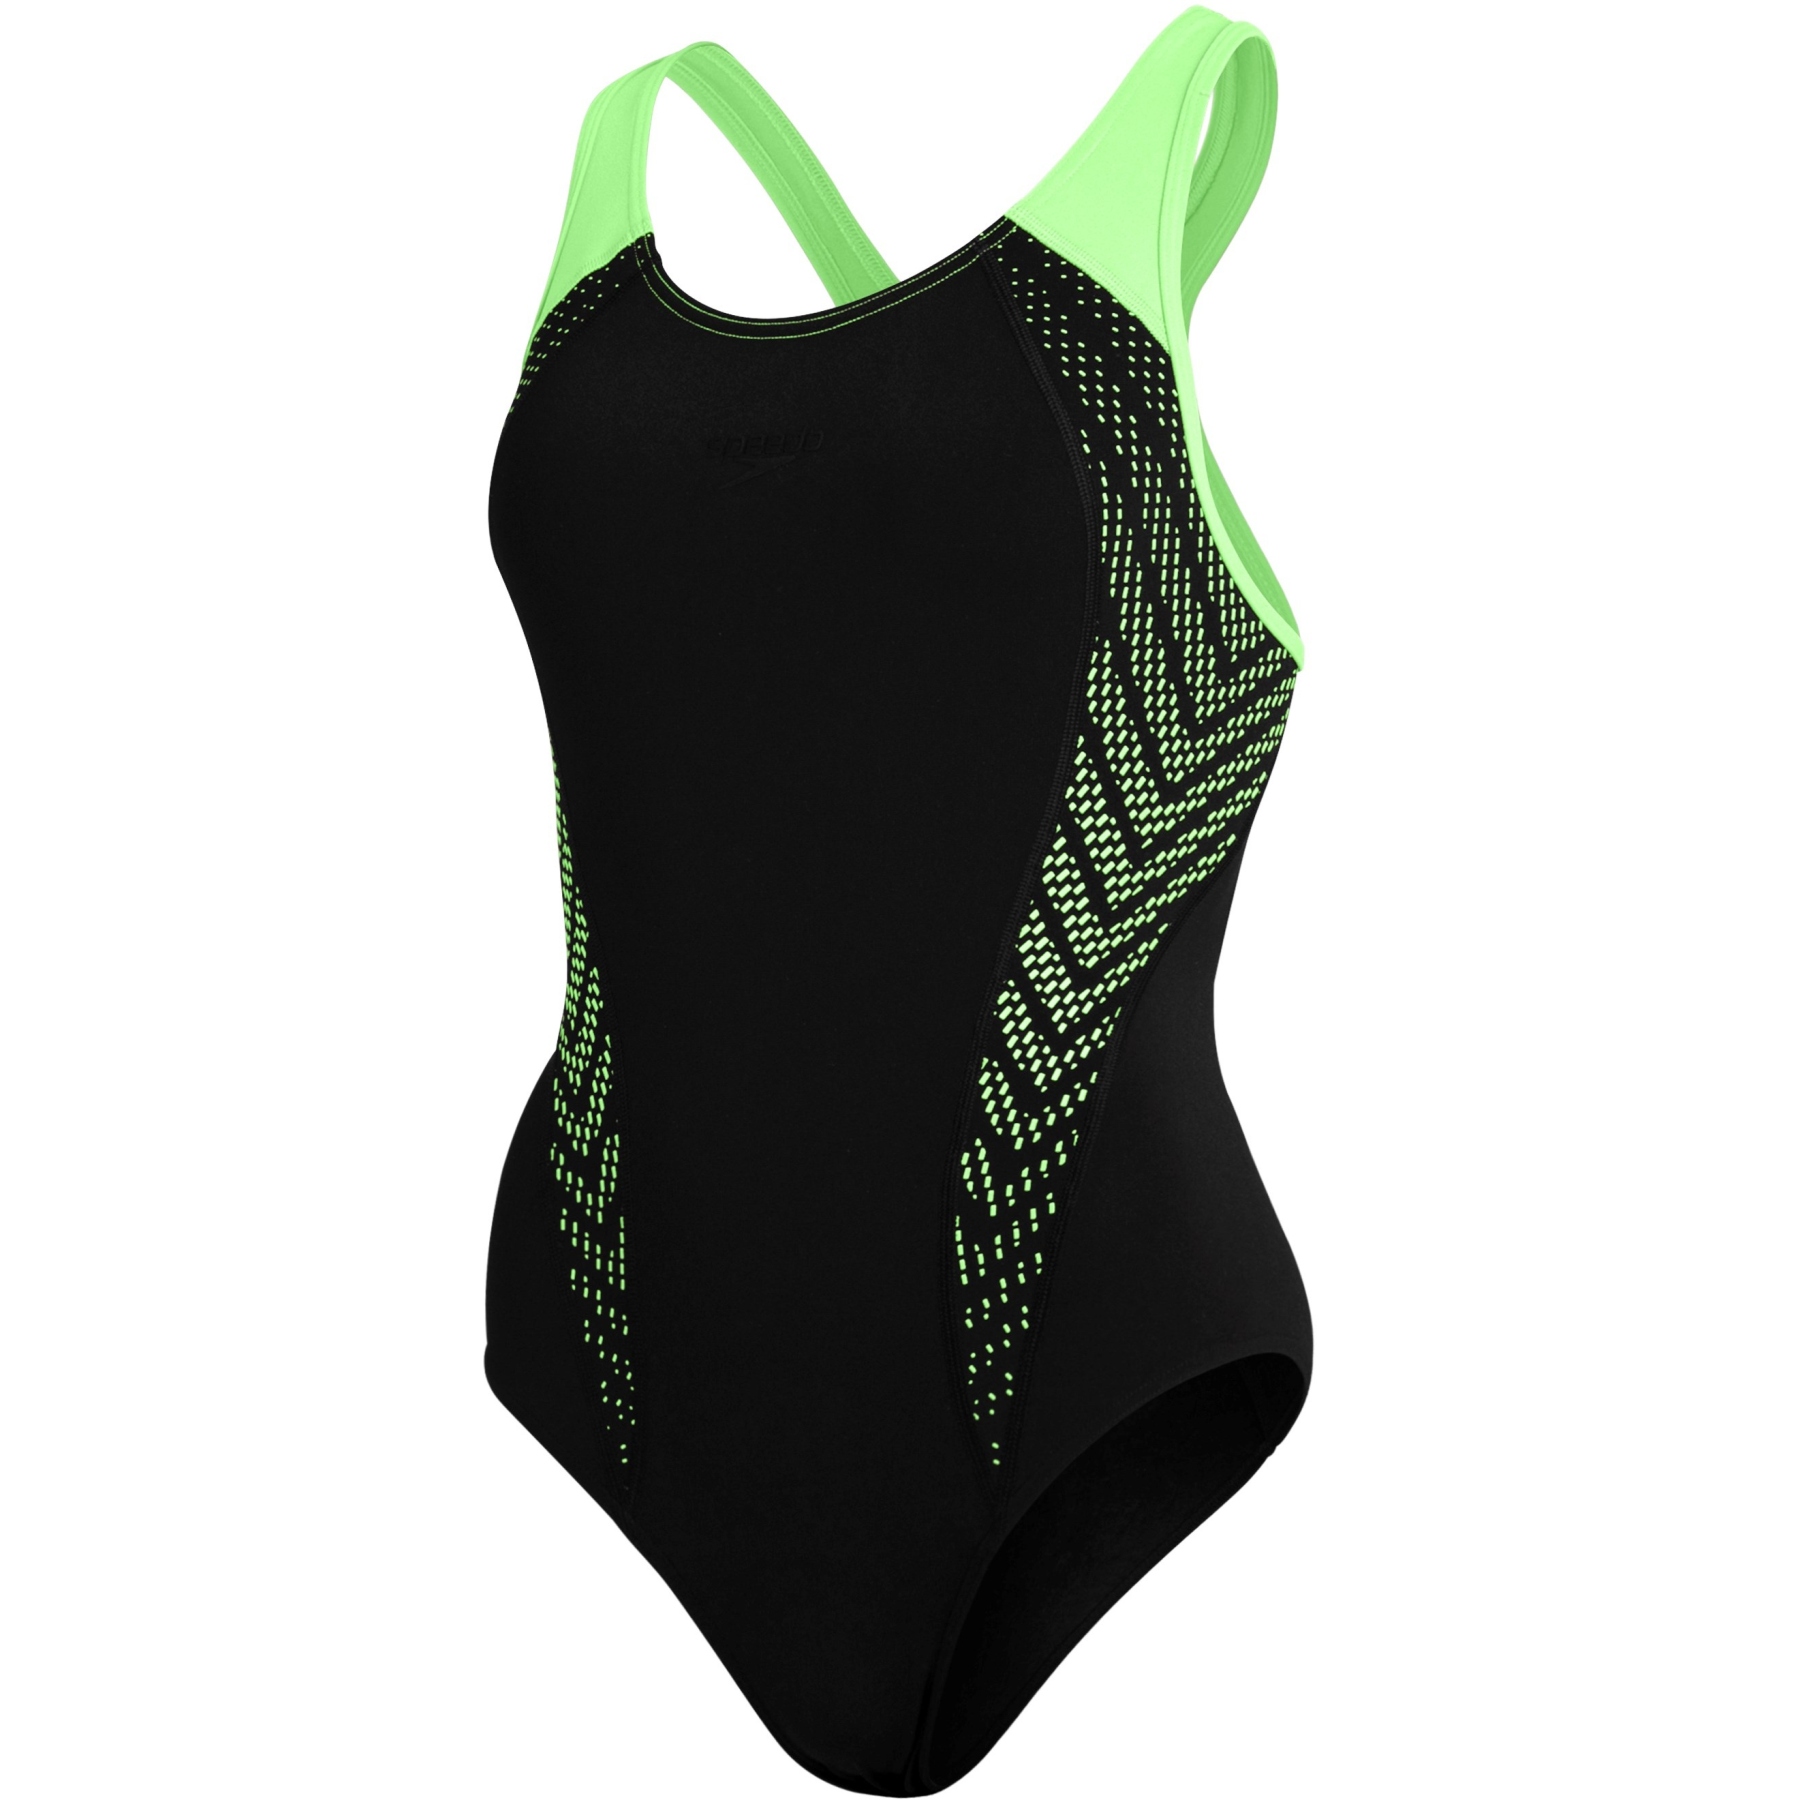 Produktbild von Speedo Placement Laneback Badeanzug Damen - black/zest green